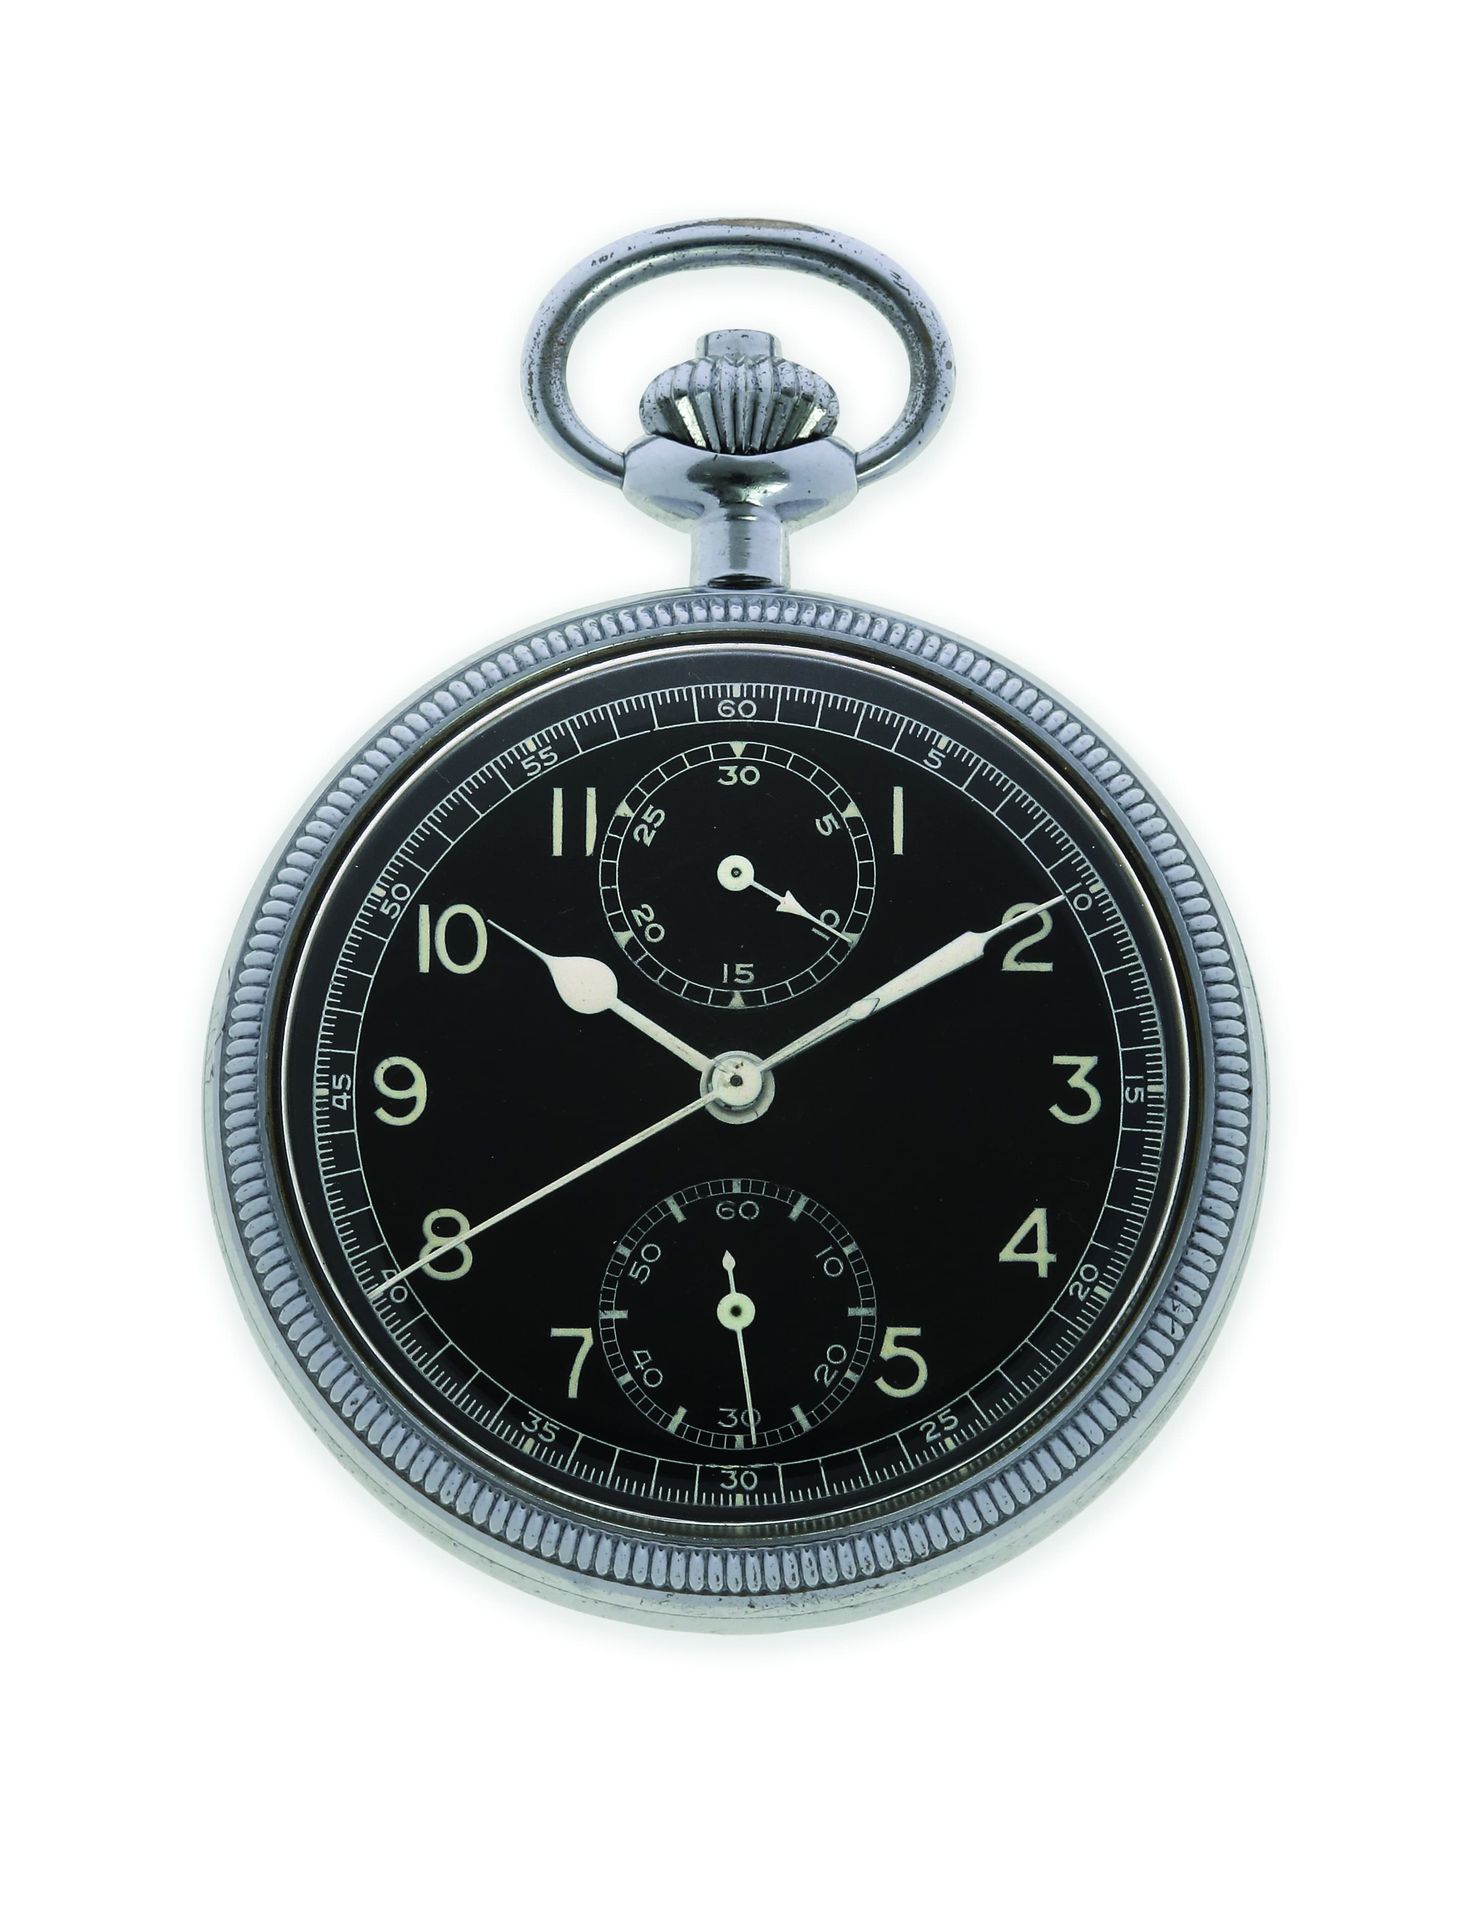 BREITLING Chronographe militaire
Montre chronographe militaire de poche en métal&hellip;